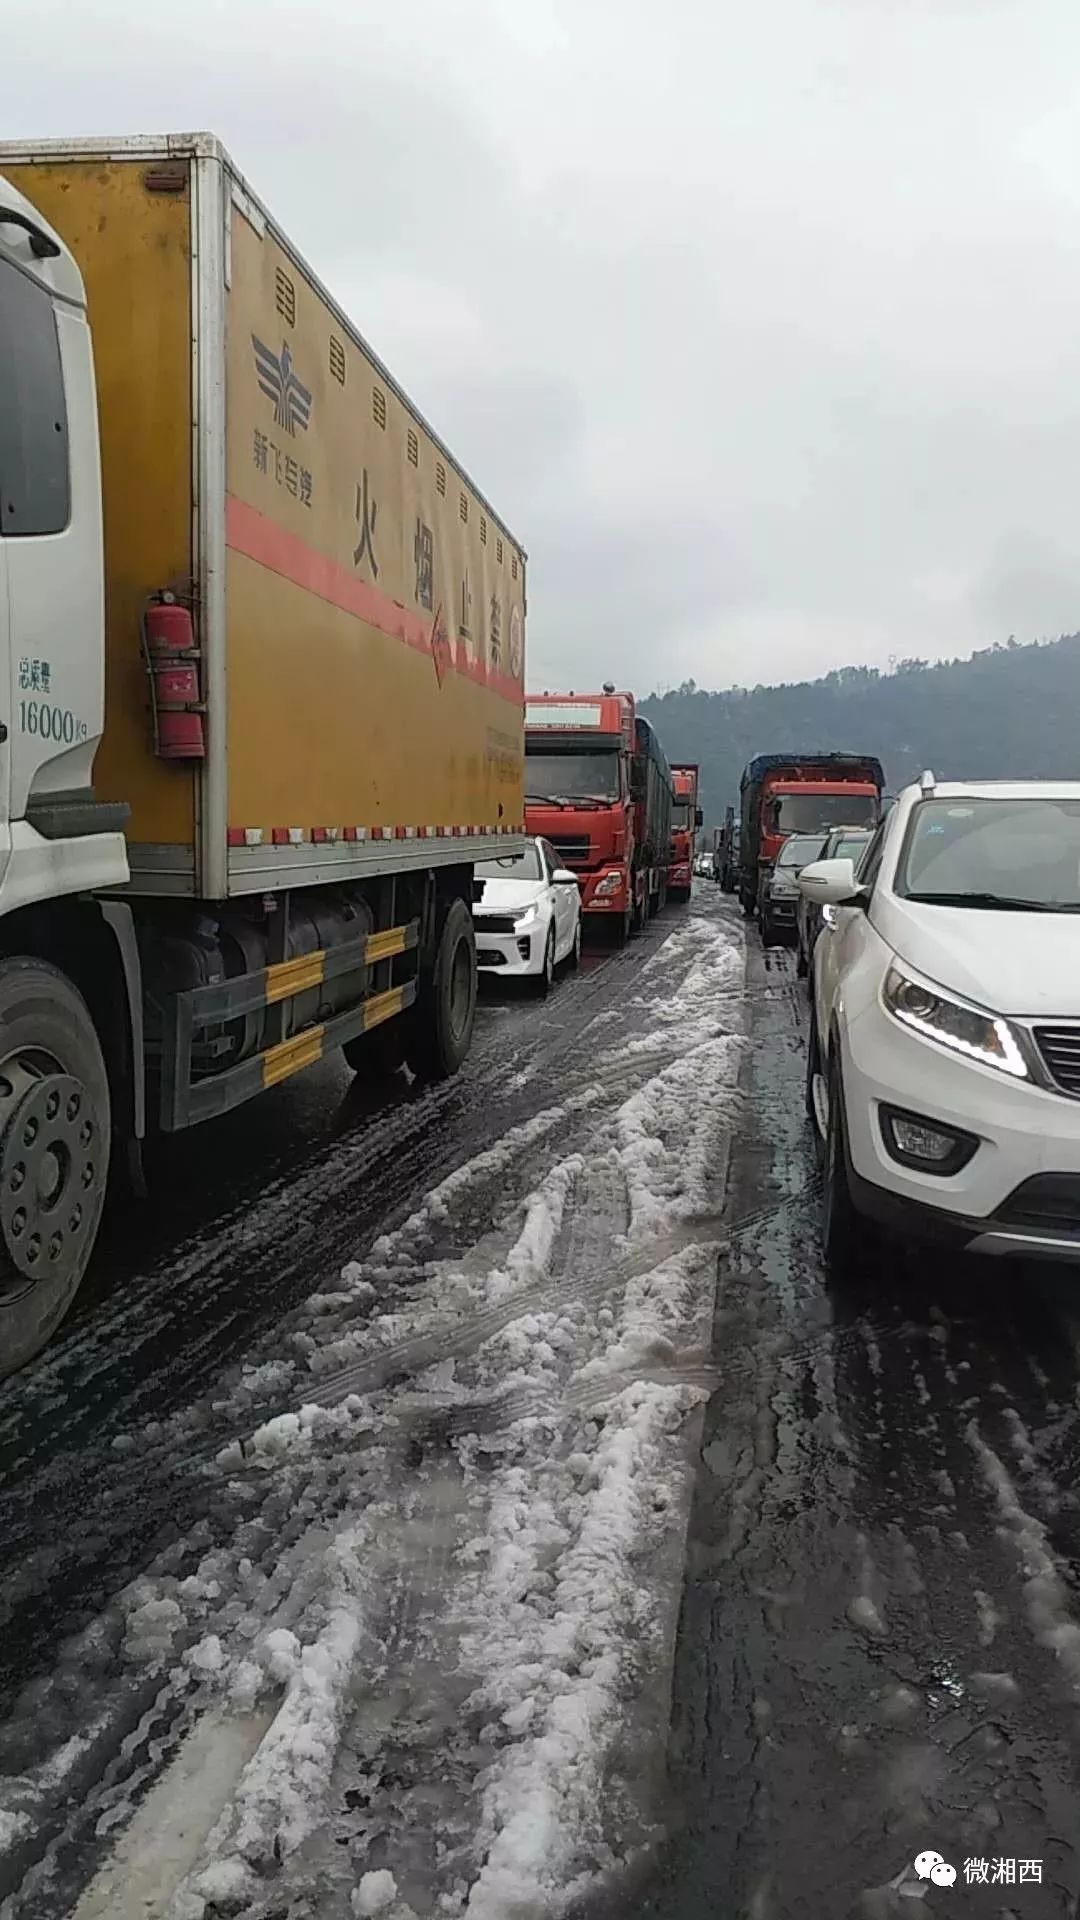 【突发】杭瑞高速怀化段因下雪发生交通事故双向交通中断超5小时,旅客